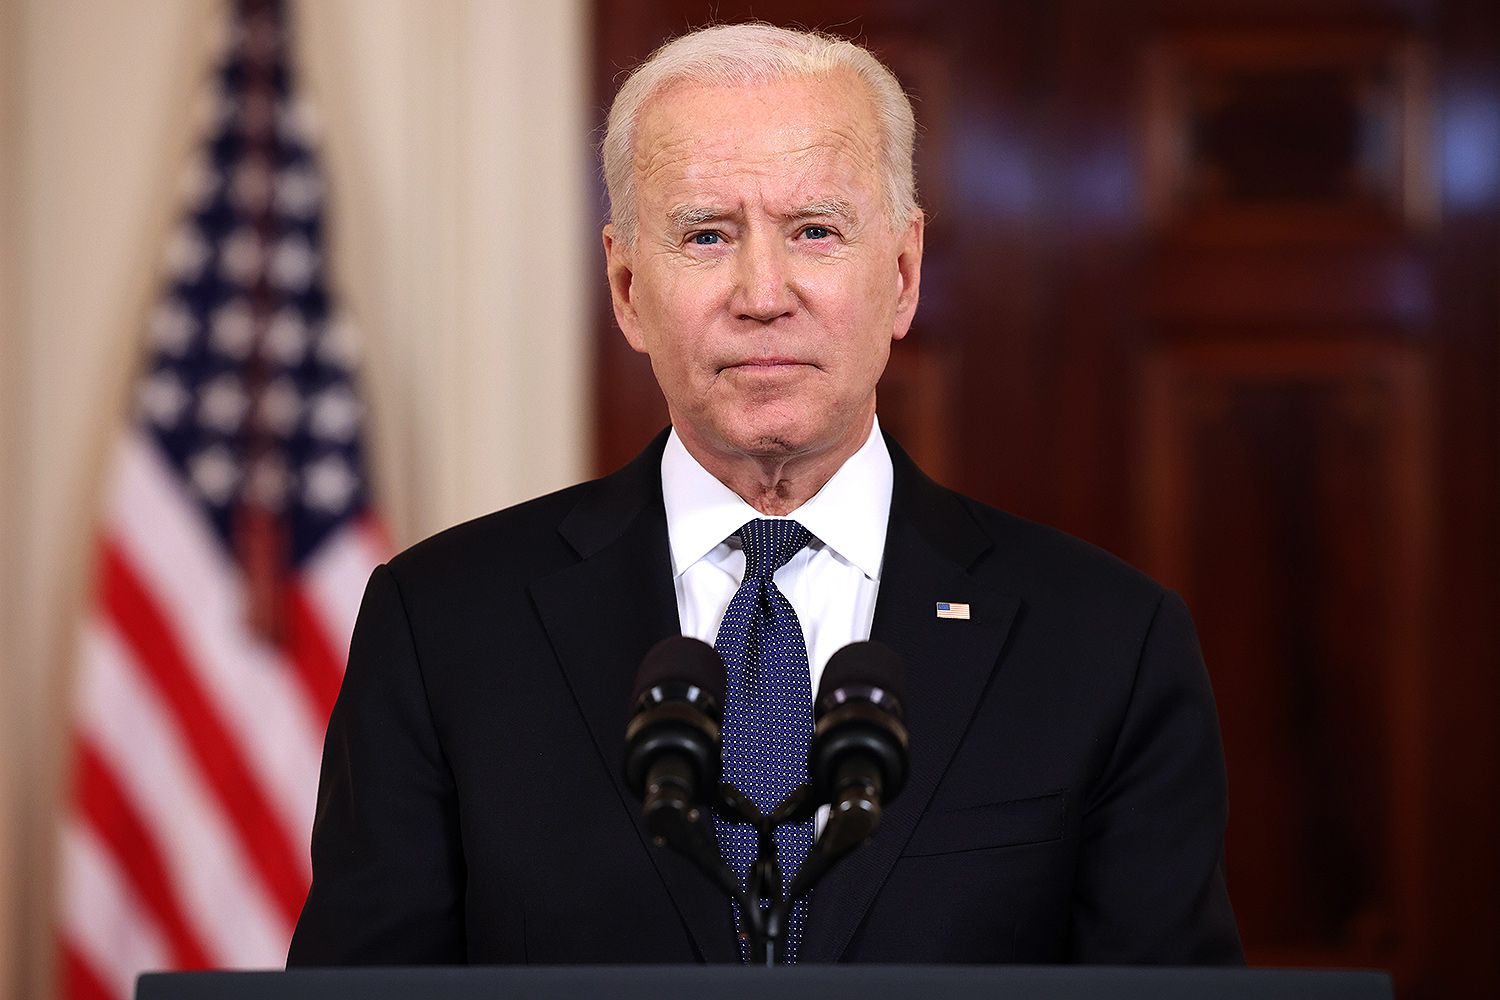 President Joe Biden standing in front of two microphones